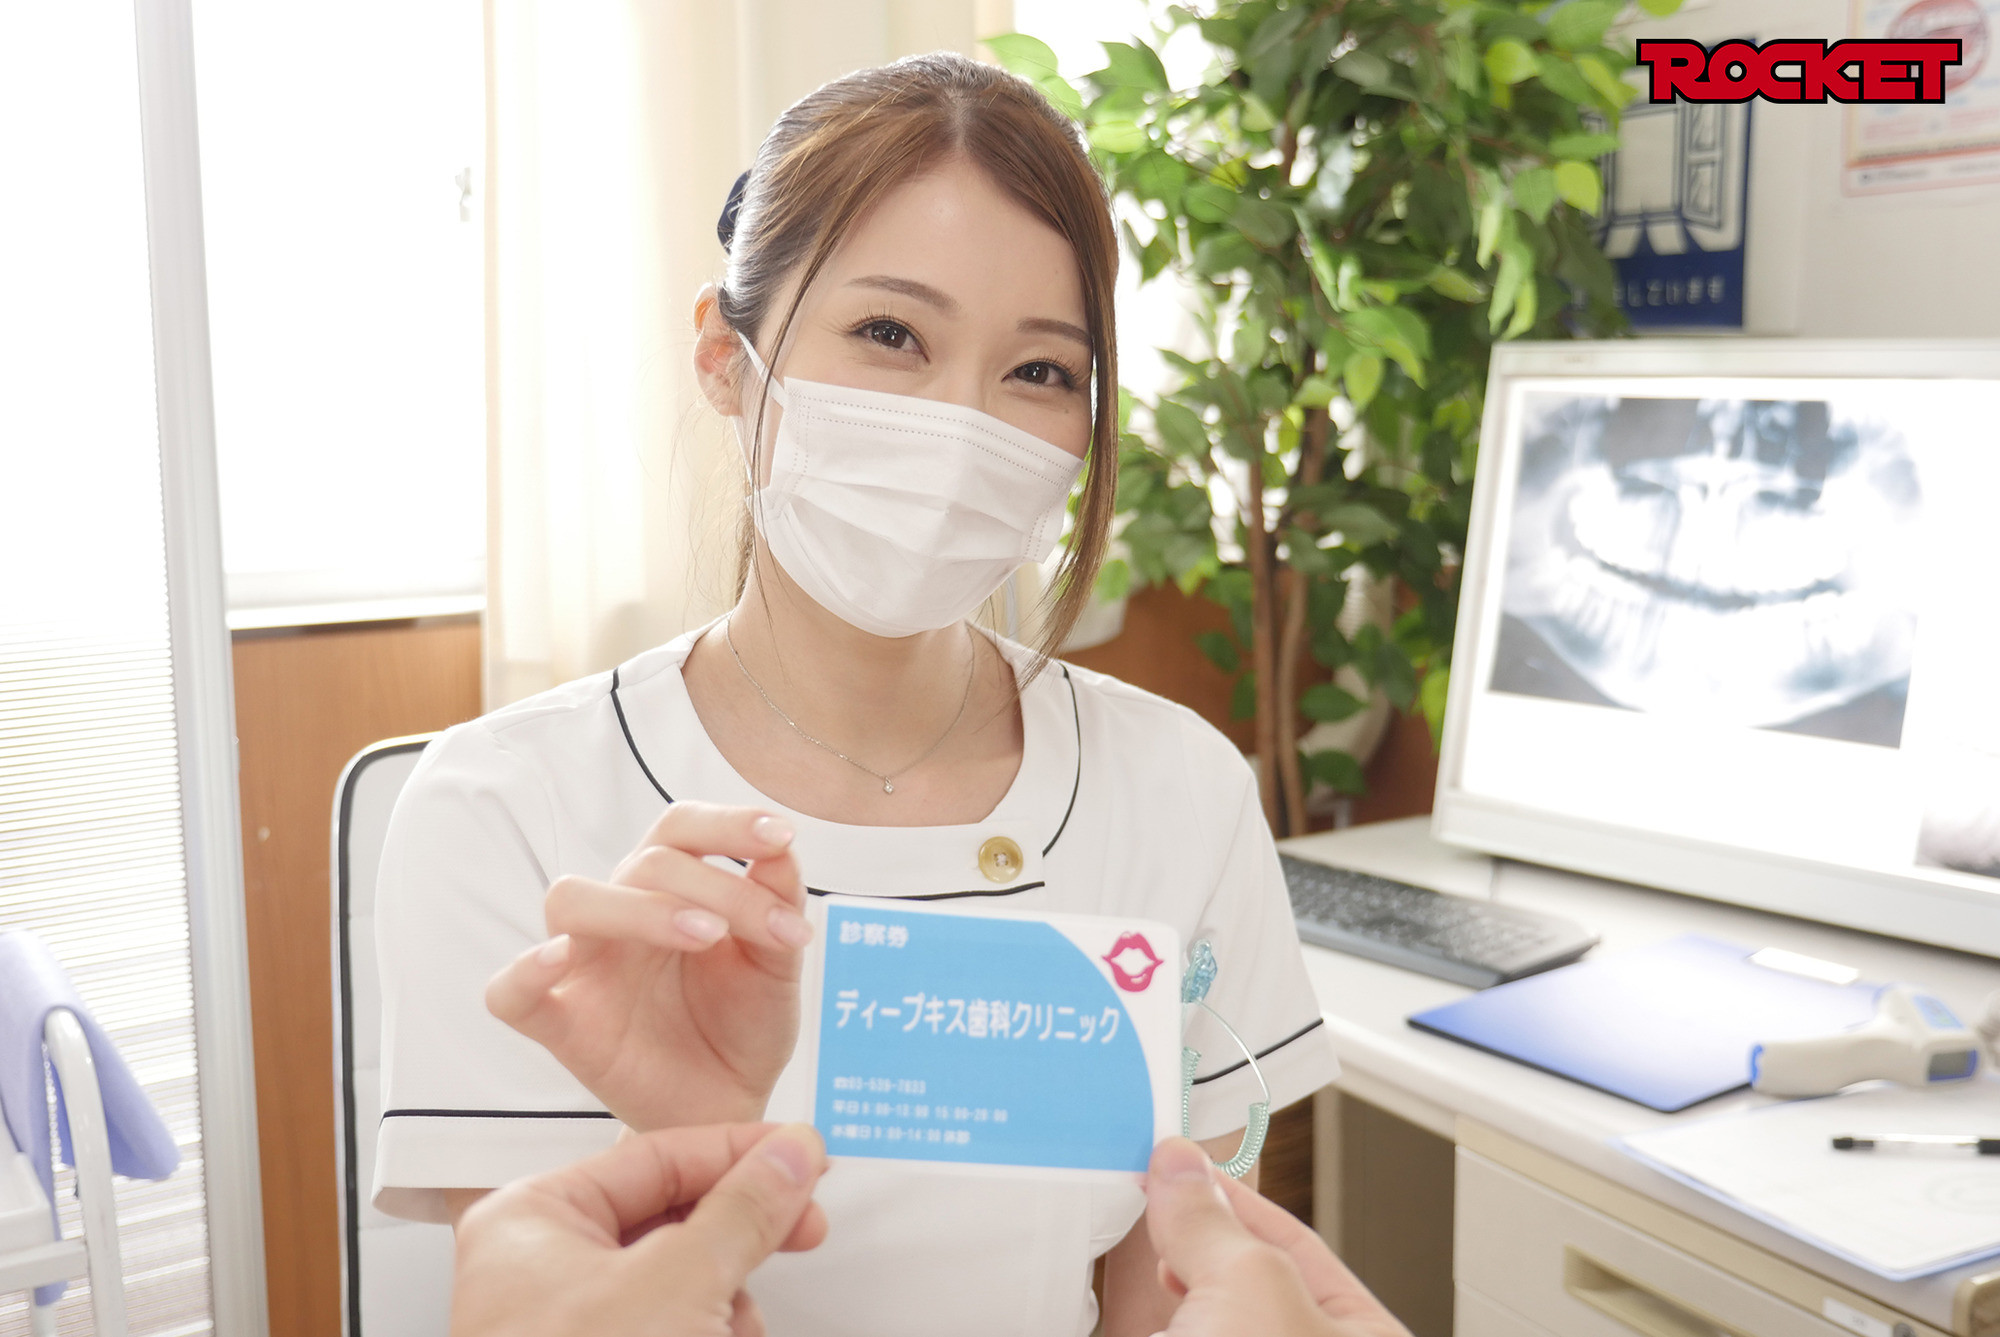 ★【唾液】ディープキス歯科クリニック 5 佐伯由美香先生のアナコンダキスSP